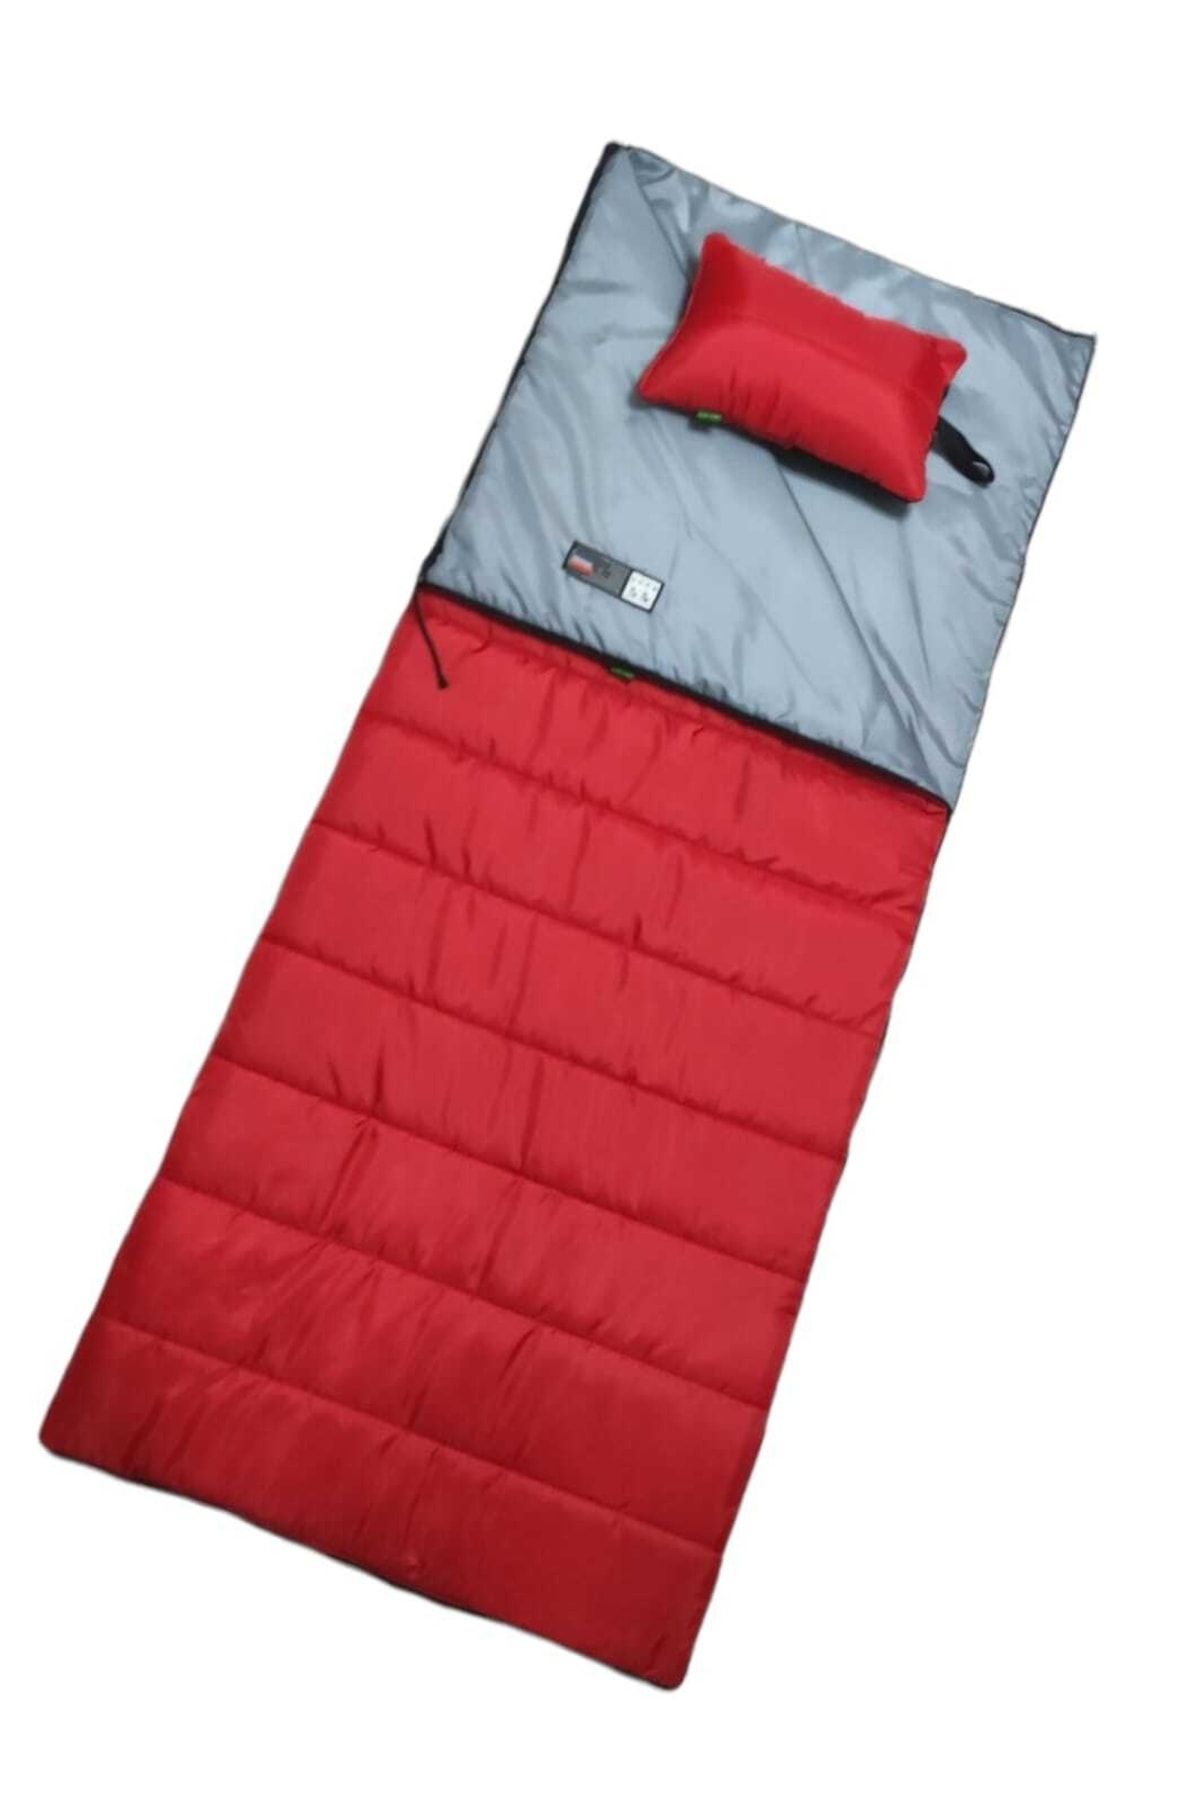 CAMP STORY Tim-8 200 Gr Yastıklı Battaniye Tipi Uyku Tulumu Kırmızı